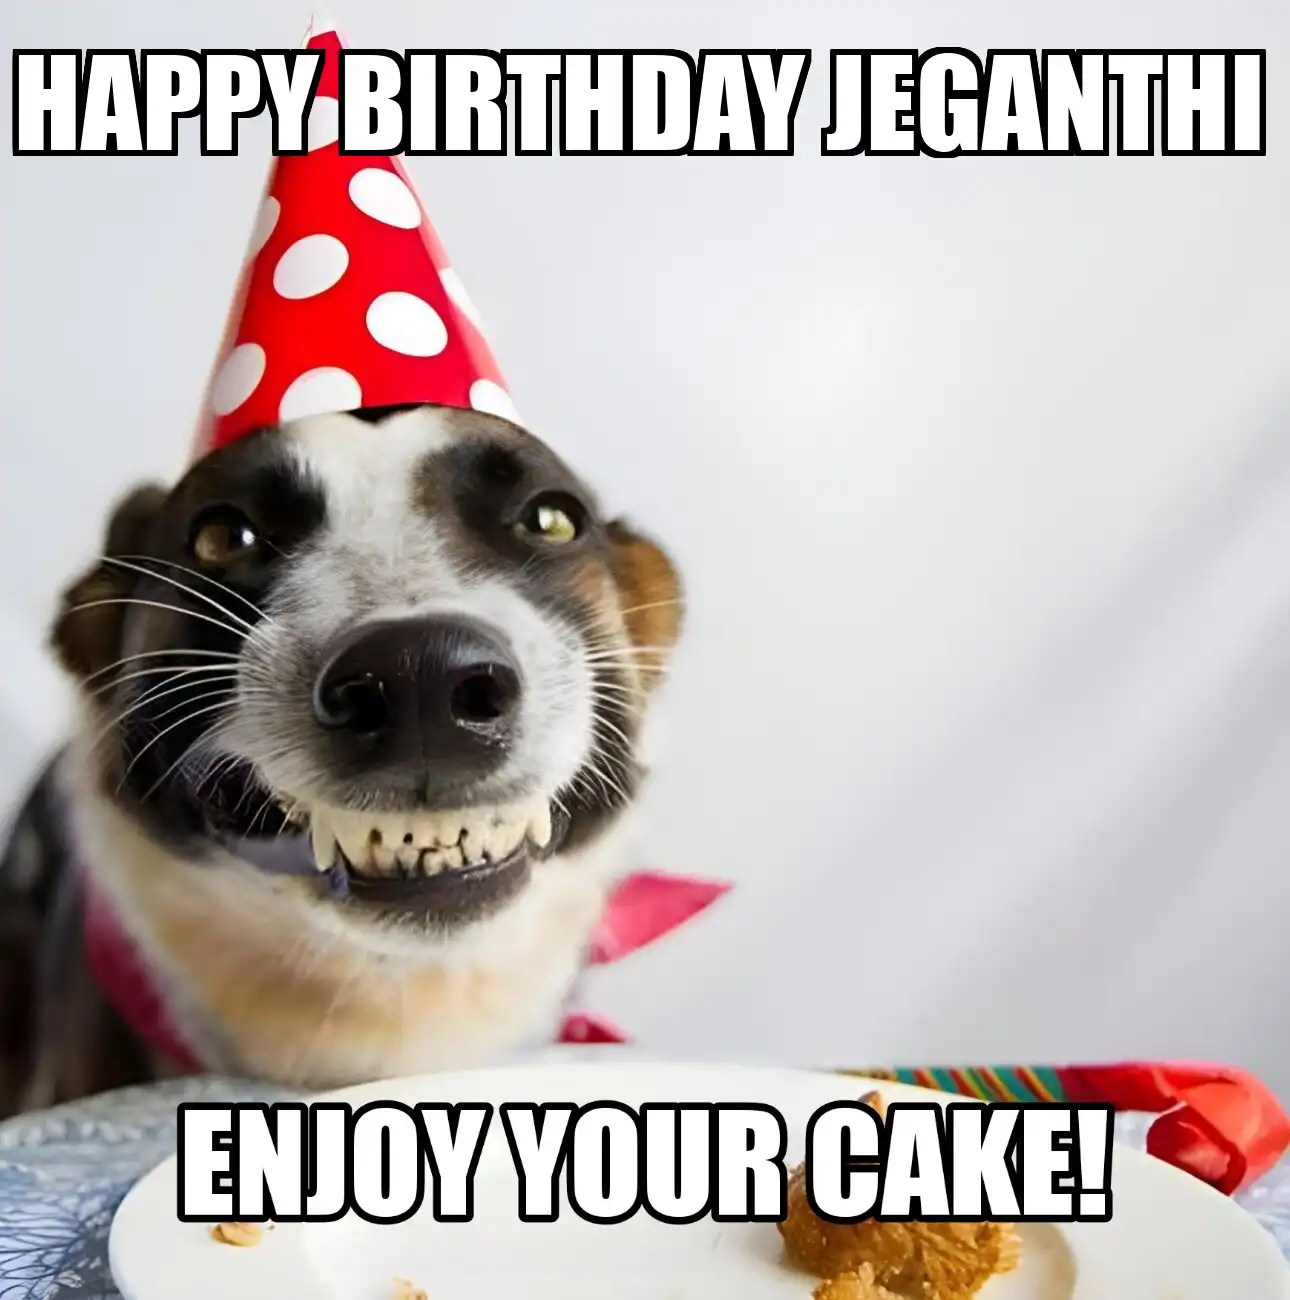 Happy Birthday Jeganthi Enjoy Your Cake Dog Meme